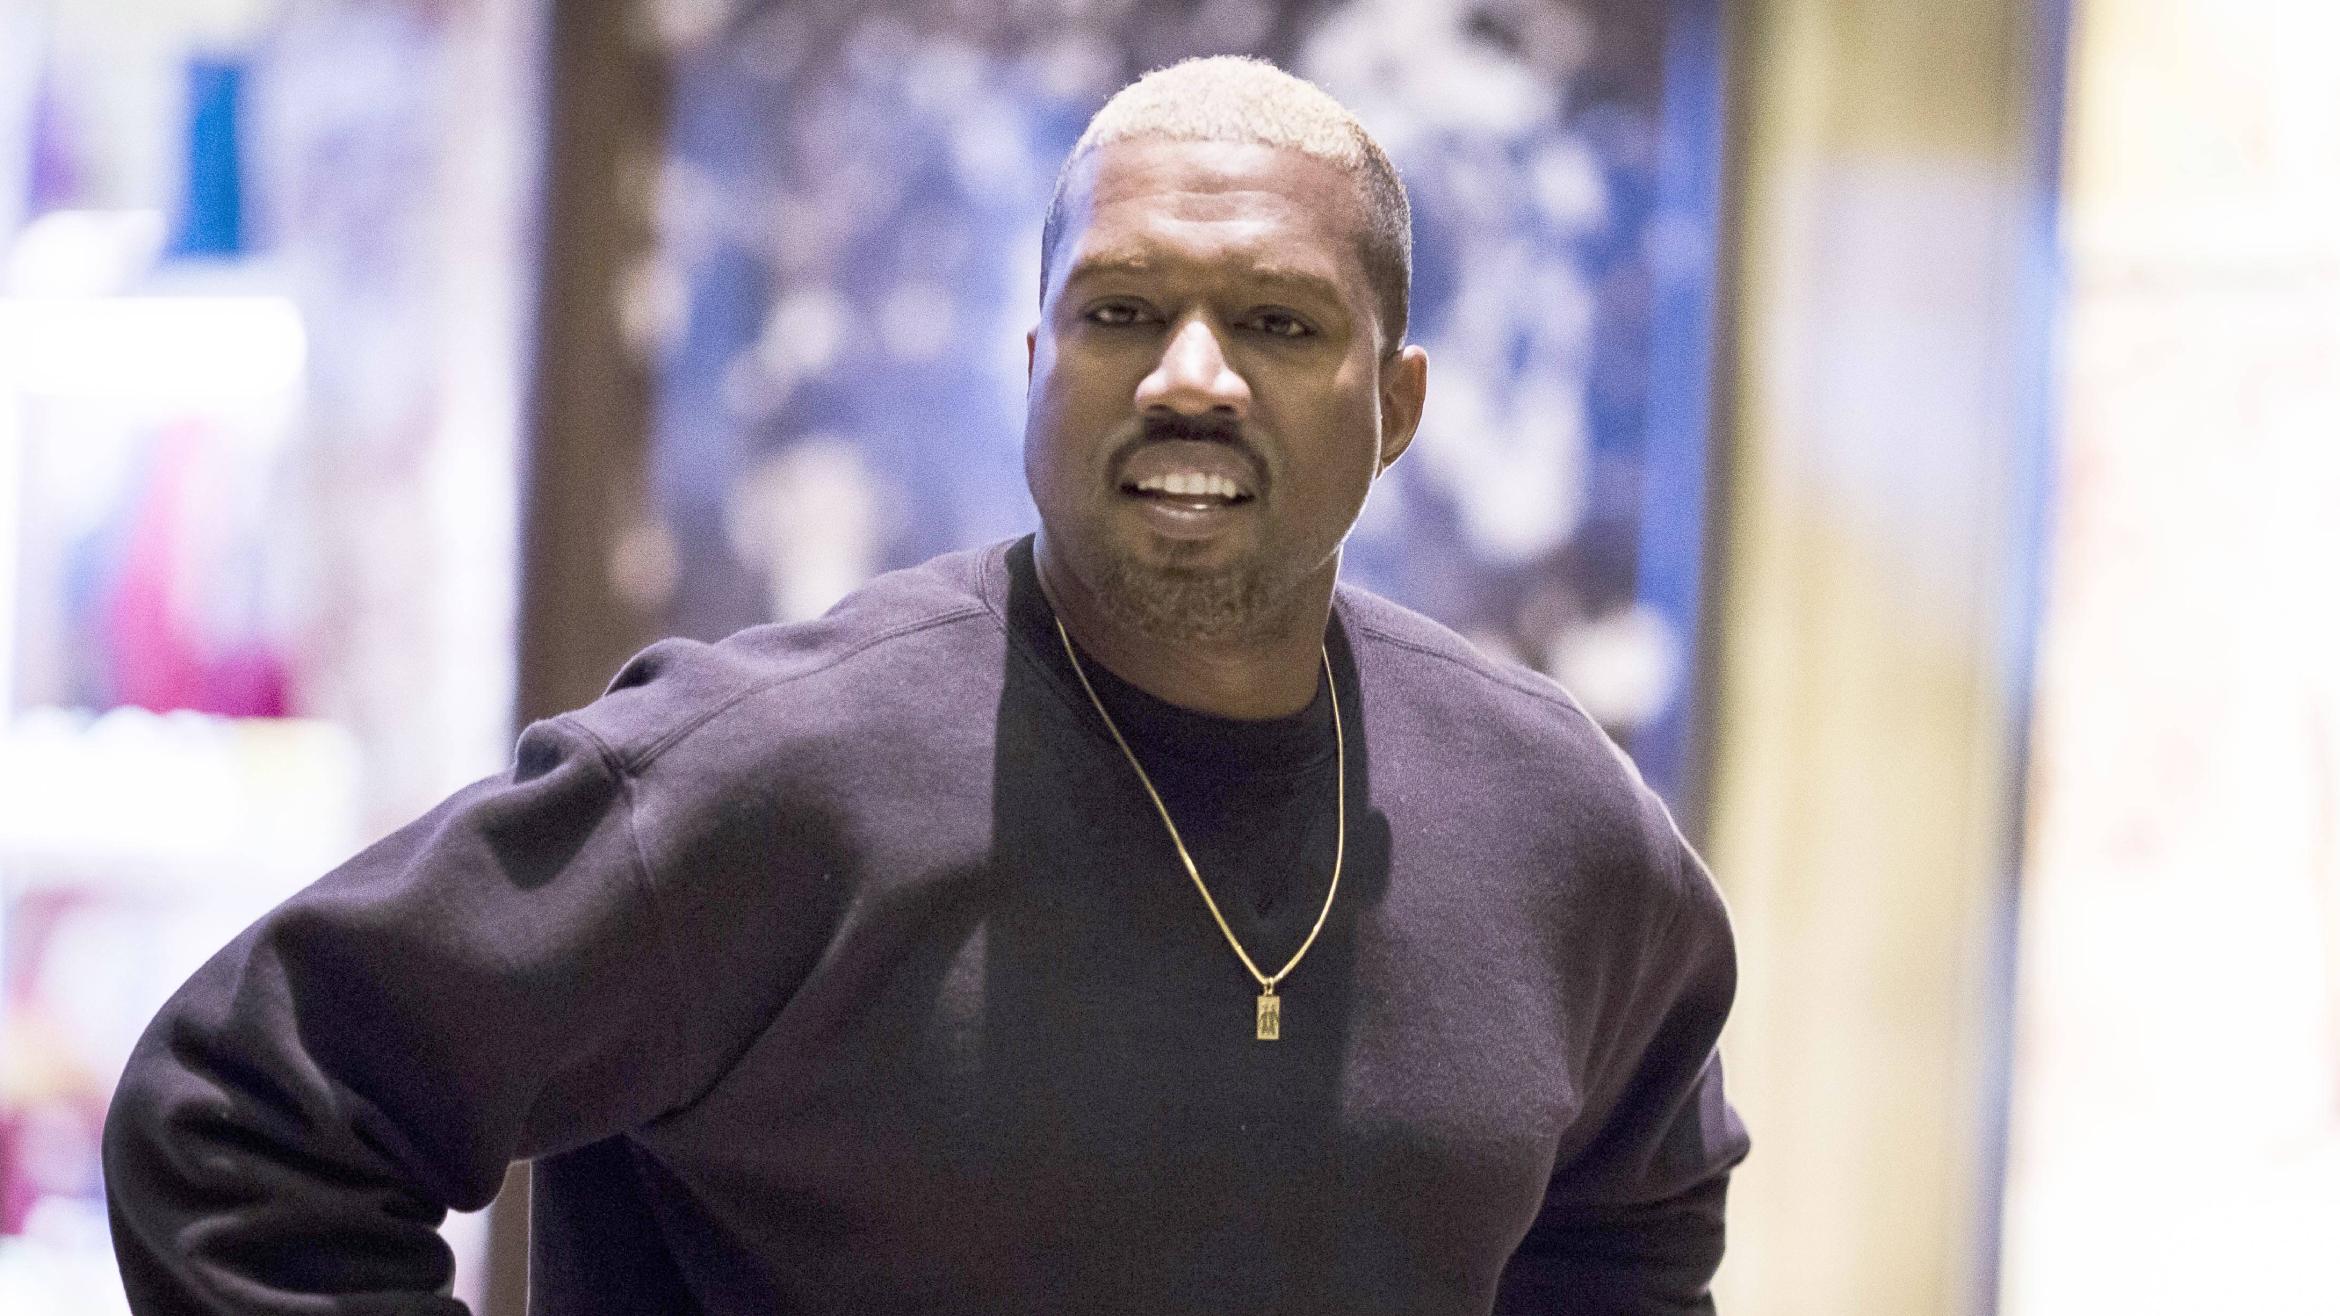 Kanye West und Adidas haben gemeinsam die Kollektion Yeezy herausgegeben - 